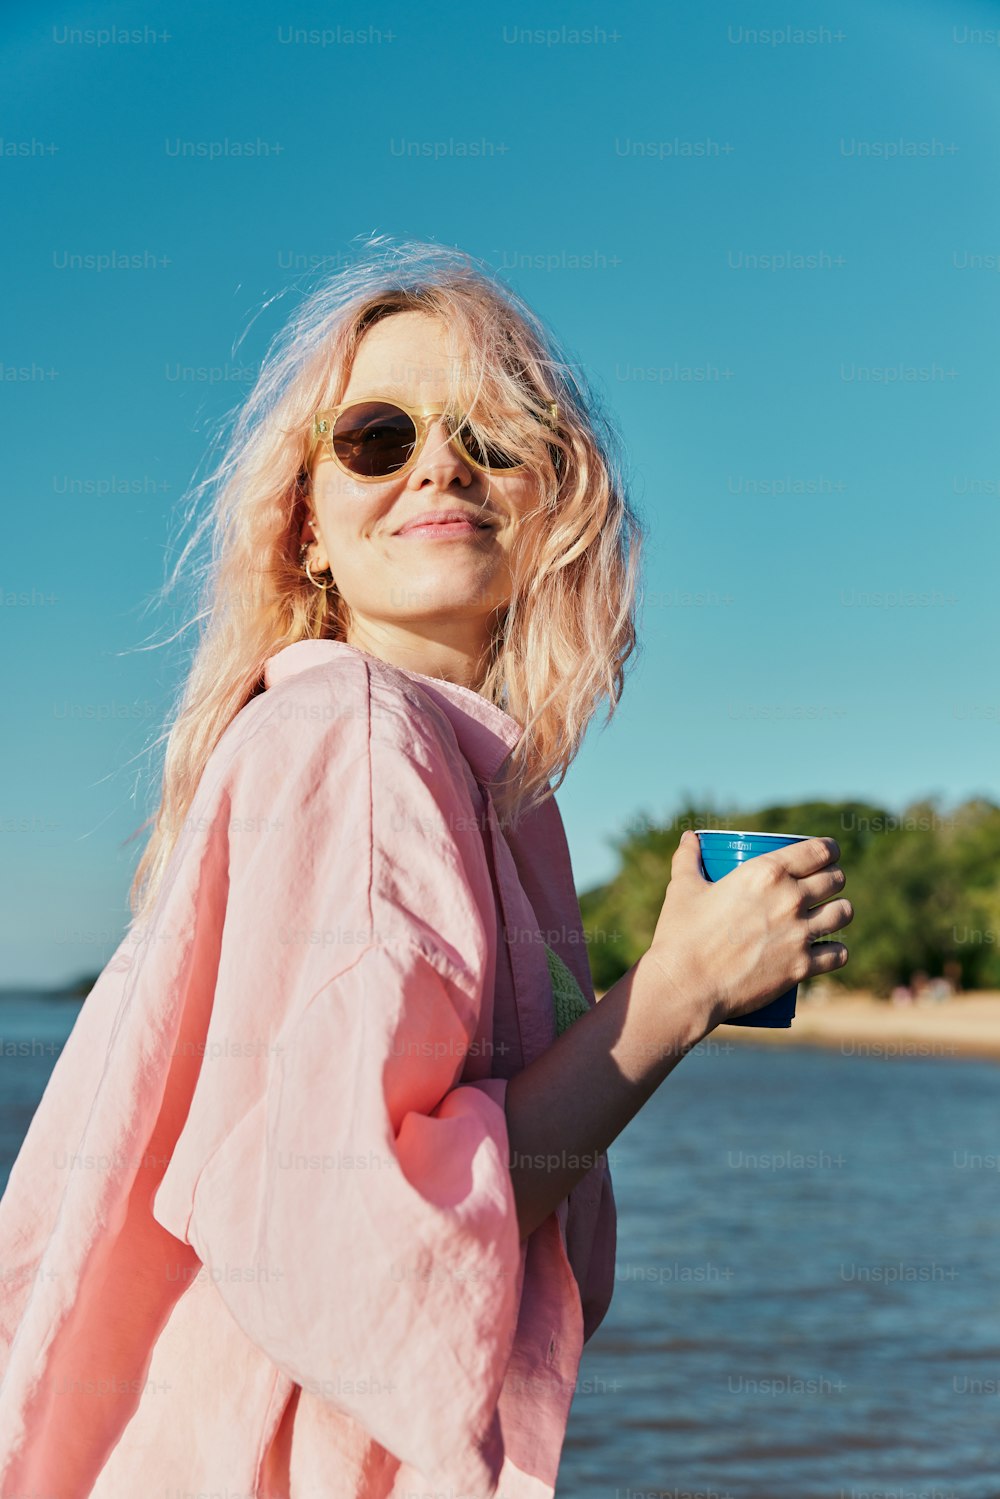 분홍색 셔츠와 선글라스를 쓴 여자가 커피 한 잔을 들고 있다